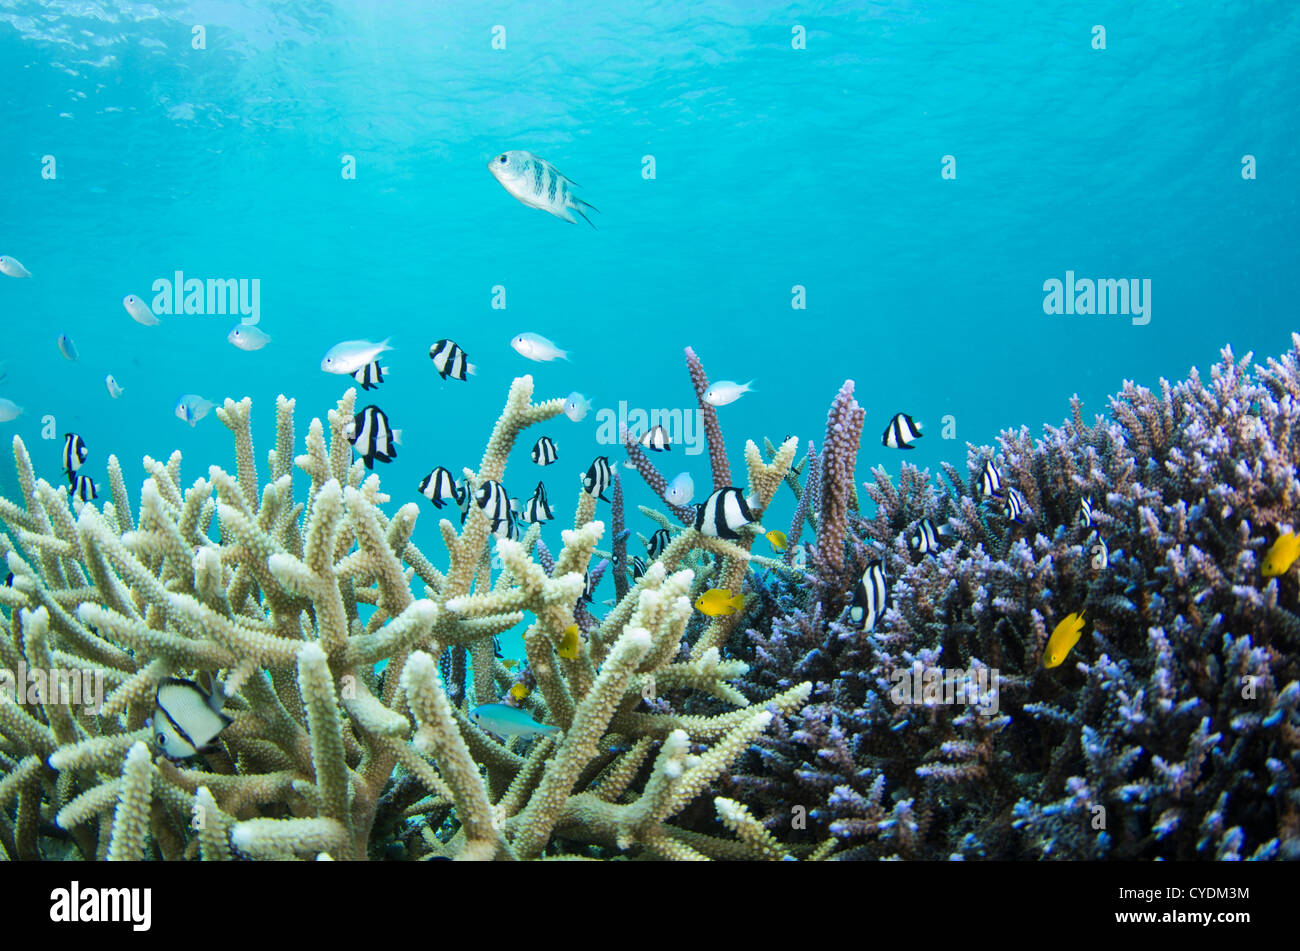 Arrecifes de coral frente a las costas de la isla de Ishigaki, Okinawa, Japón. Foto de stock